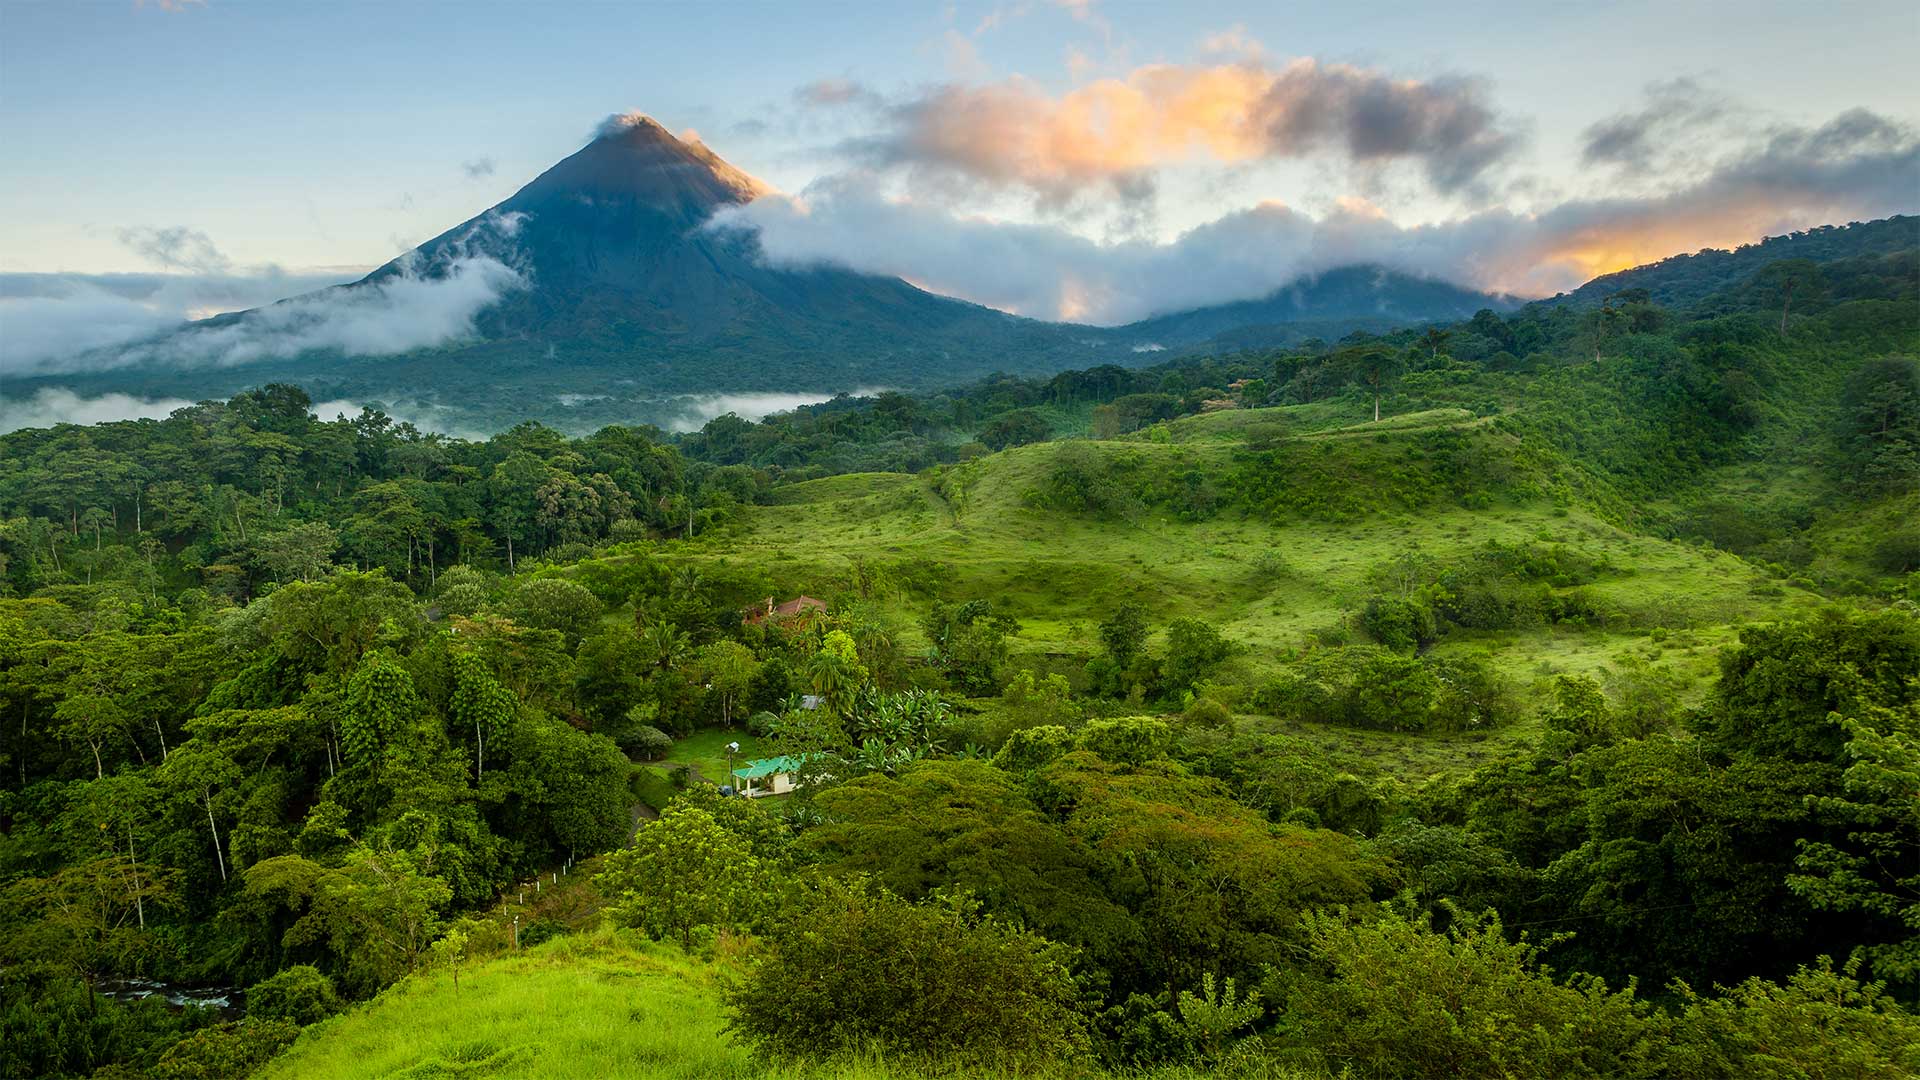 Costa Rica Reise im August? Das geht trotz Regenzeit